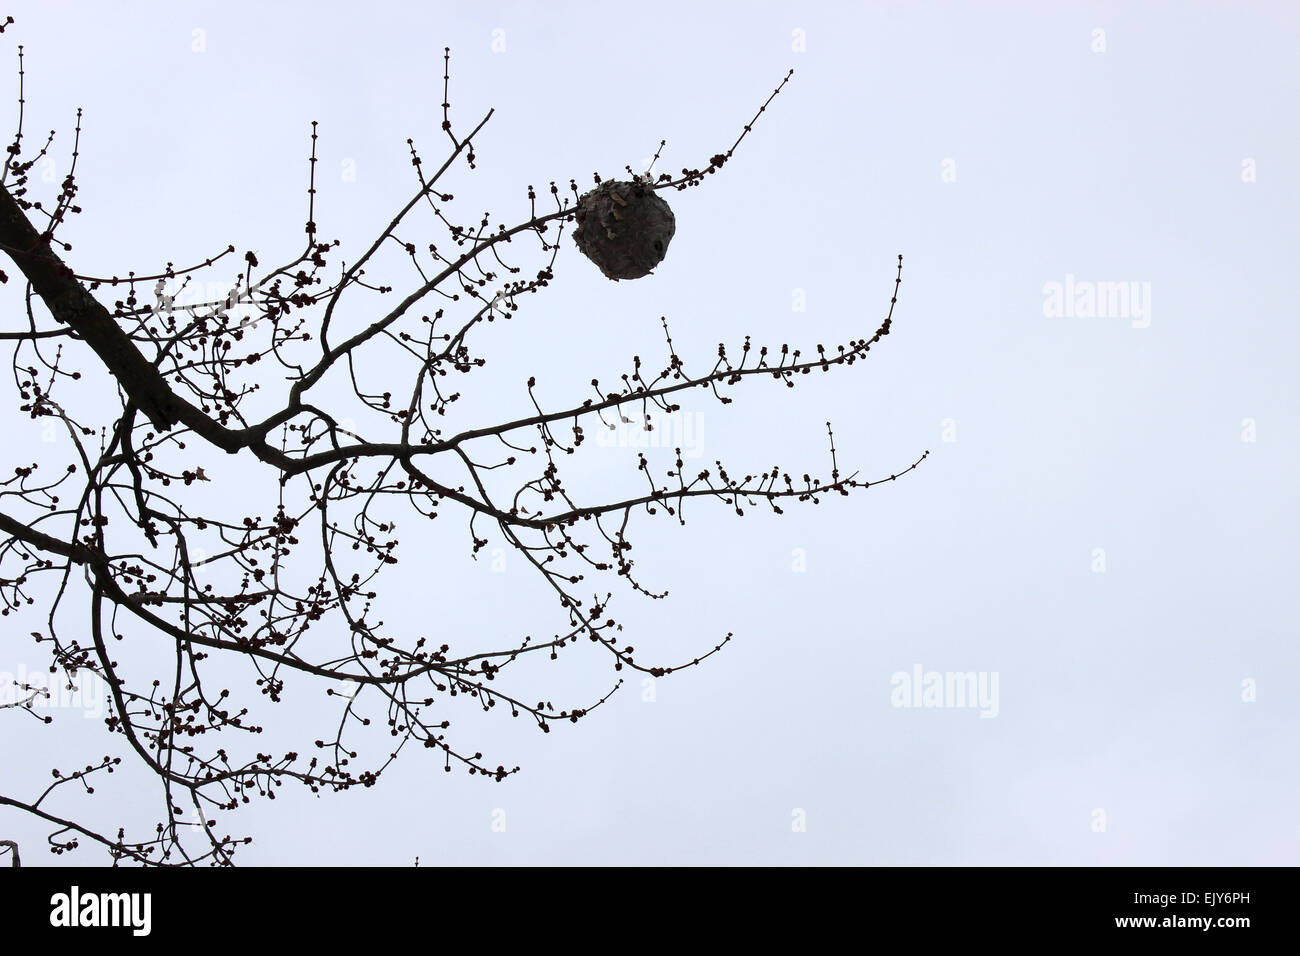 Foto von einer Wabe hängen von einem Baum an einem bewölkten Tag eines kanadischen Winter. Stockfoto